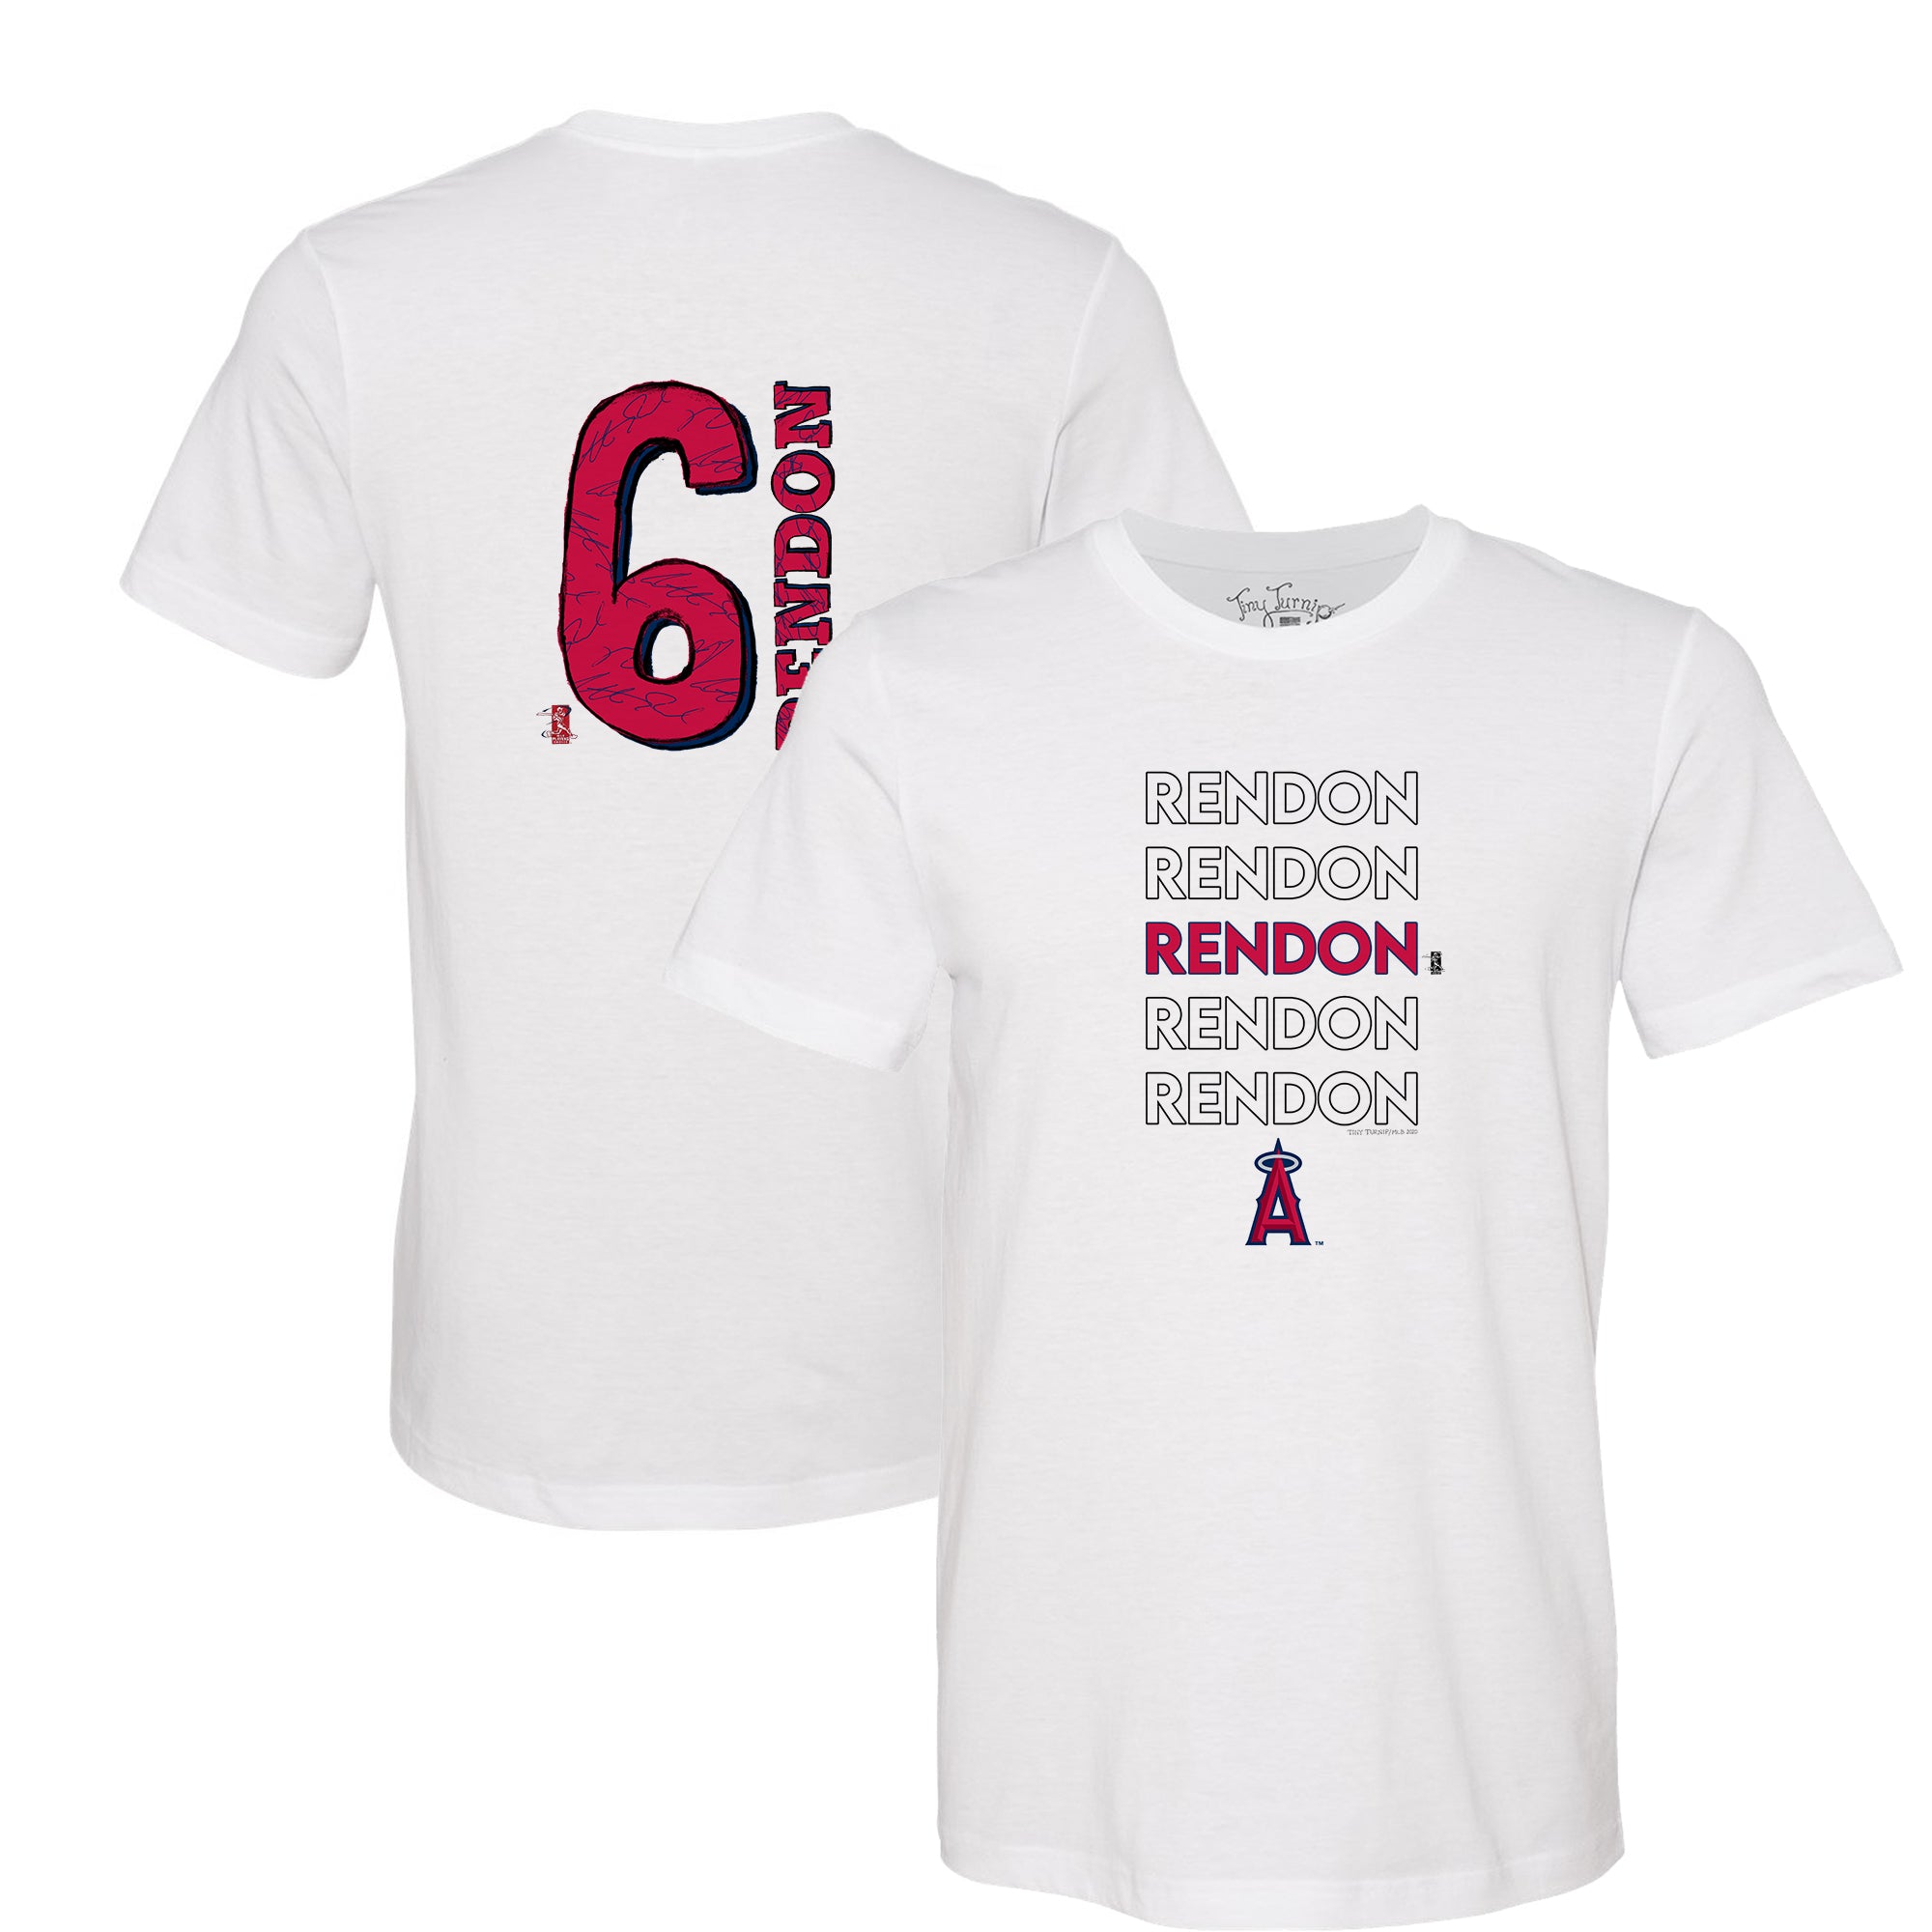 Official Kenley Jansen Boston Red Sox Jersey, Kenley Jansen Shirts, Red Sox  Apparel, Kenley Jansen Gear